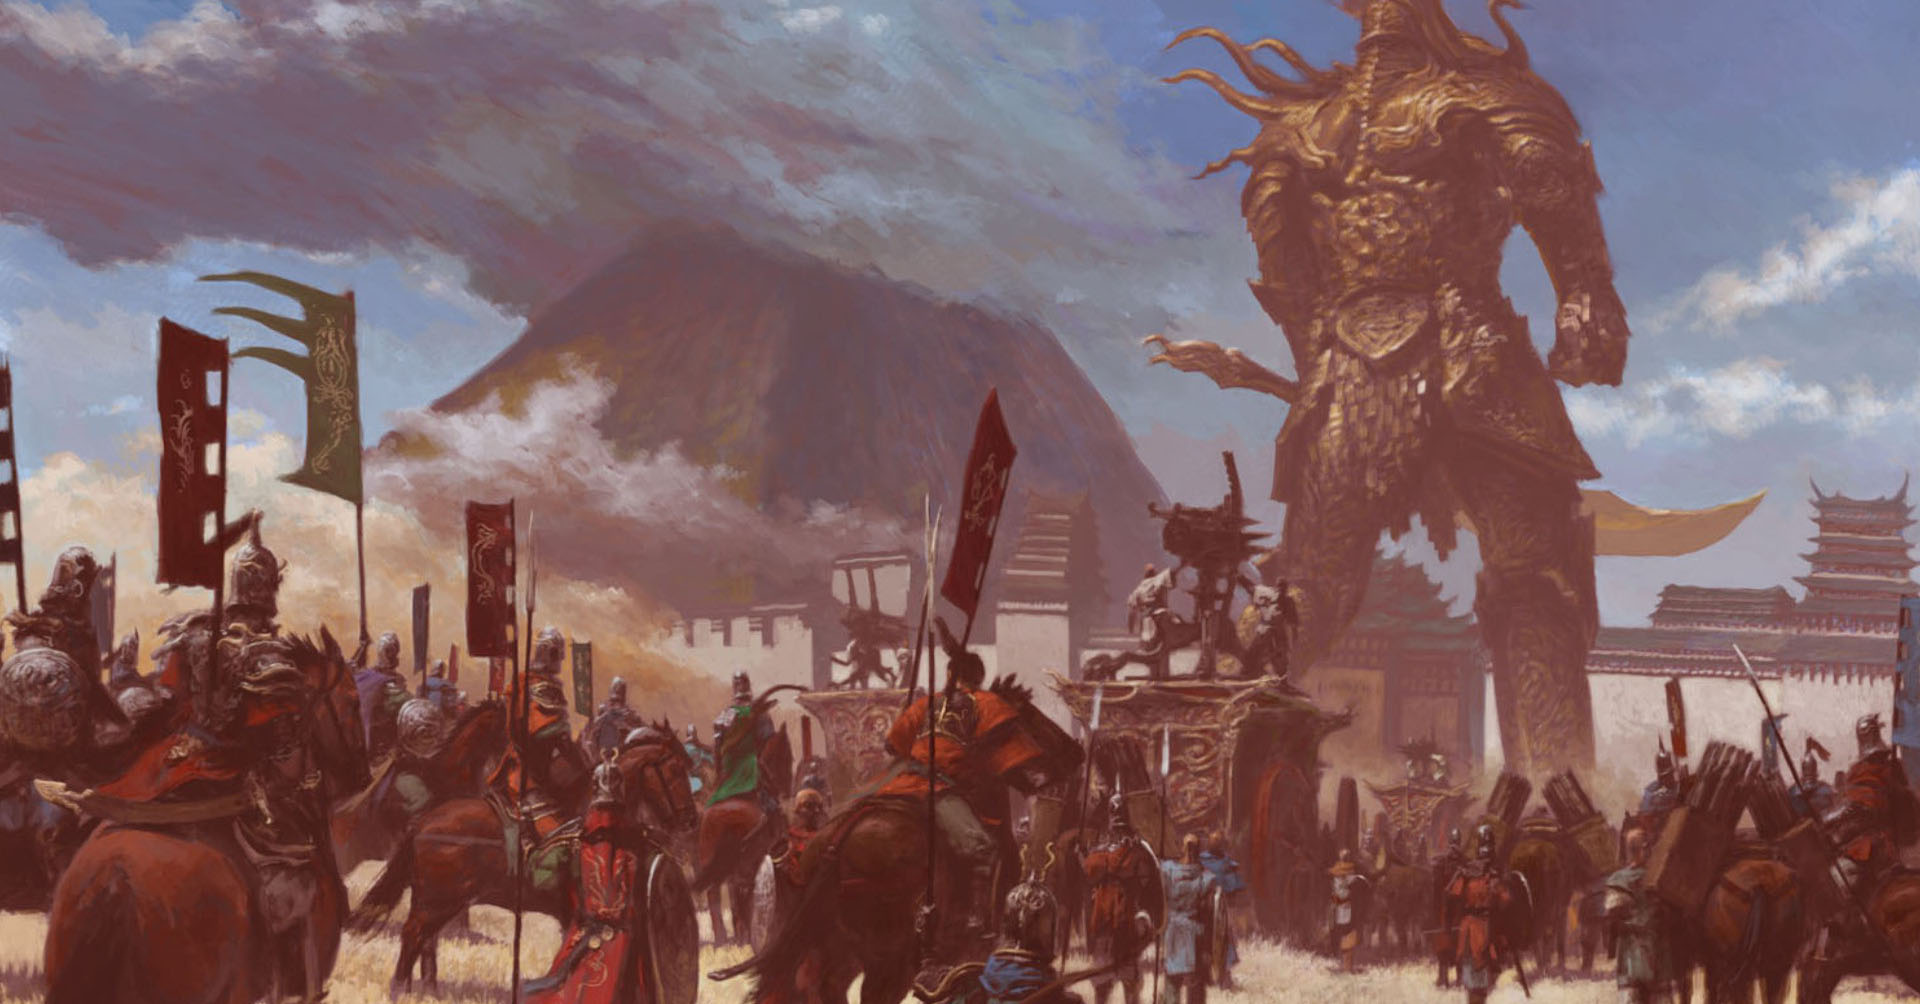 Mountains Army Giant Fantasy Art Wallpaper